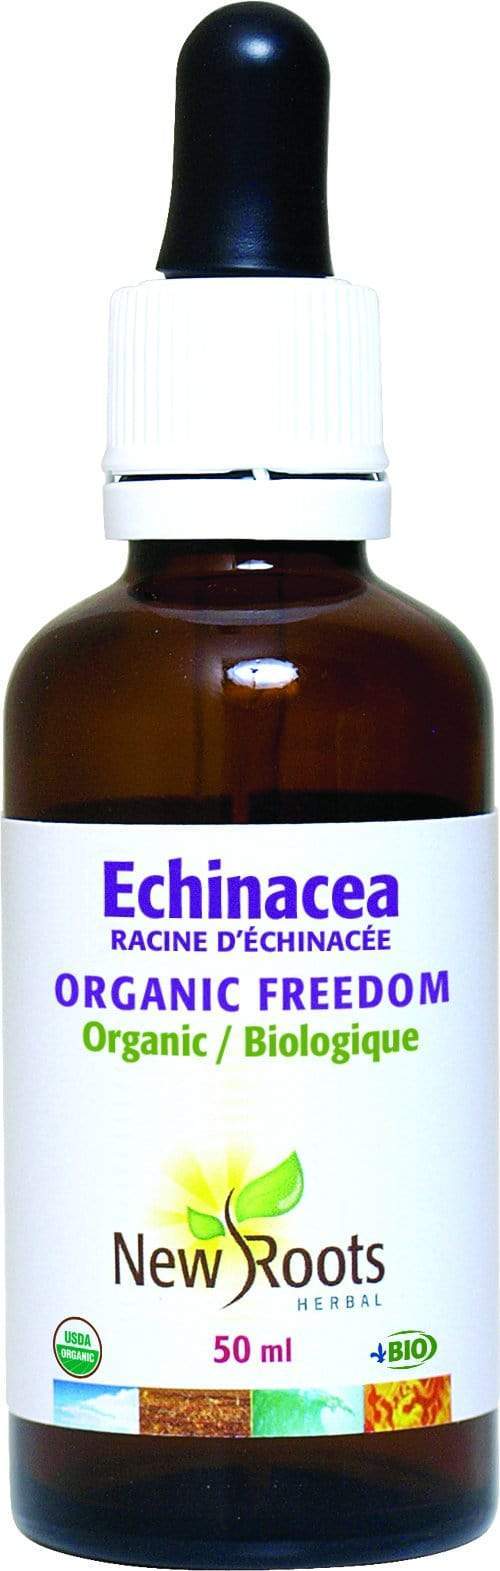 새로운 뿌리 Echinacea Organic Freedom